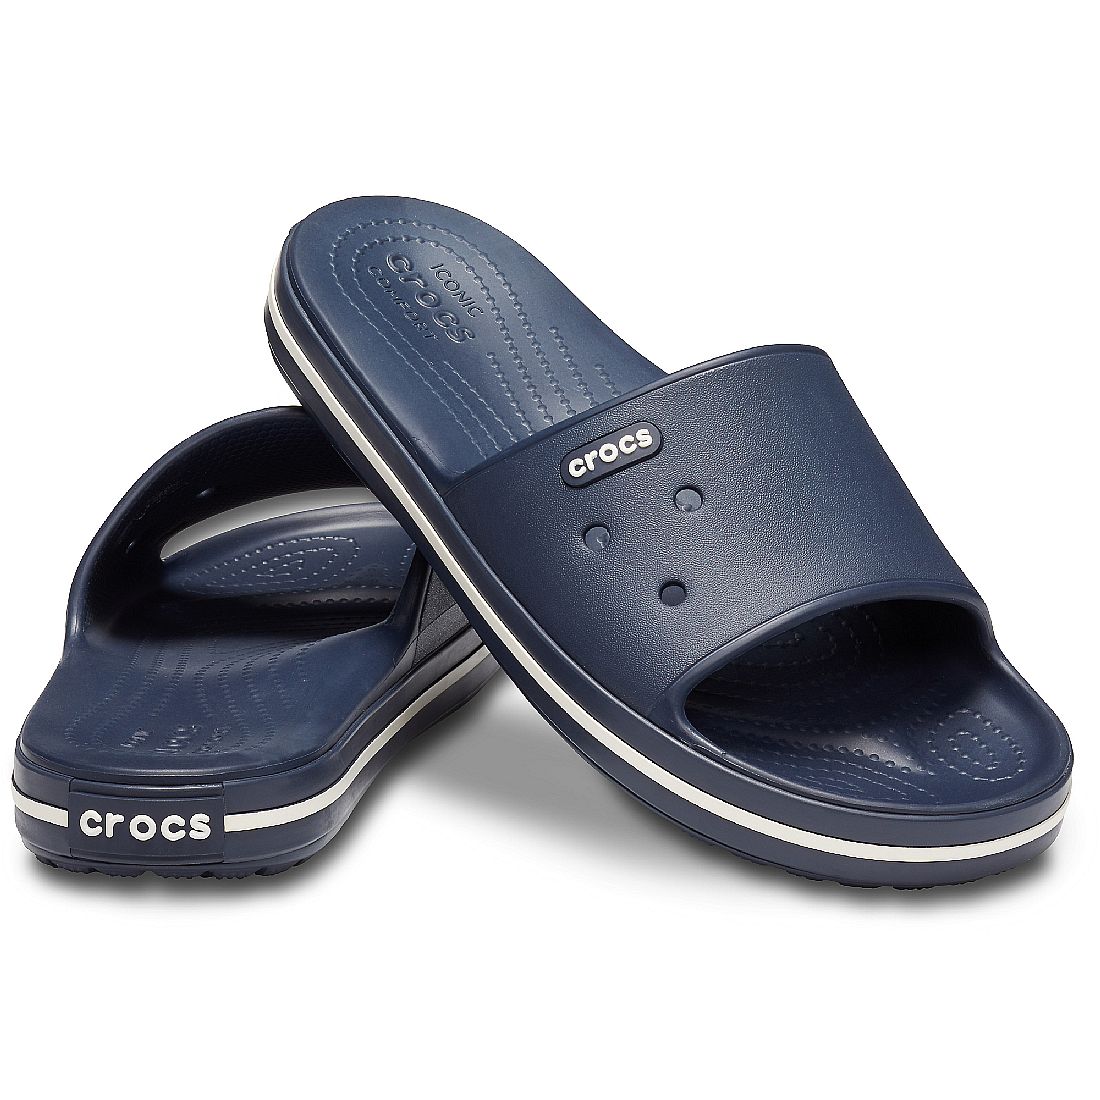 Crocs Crocband III Slide Unisex Sandale Badelatsche blau 205733